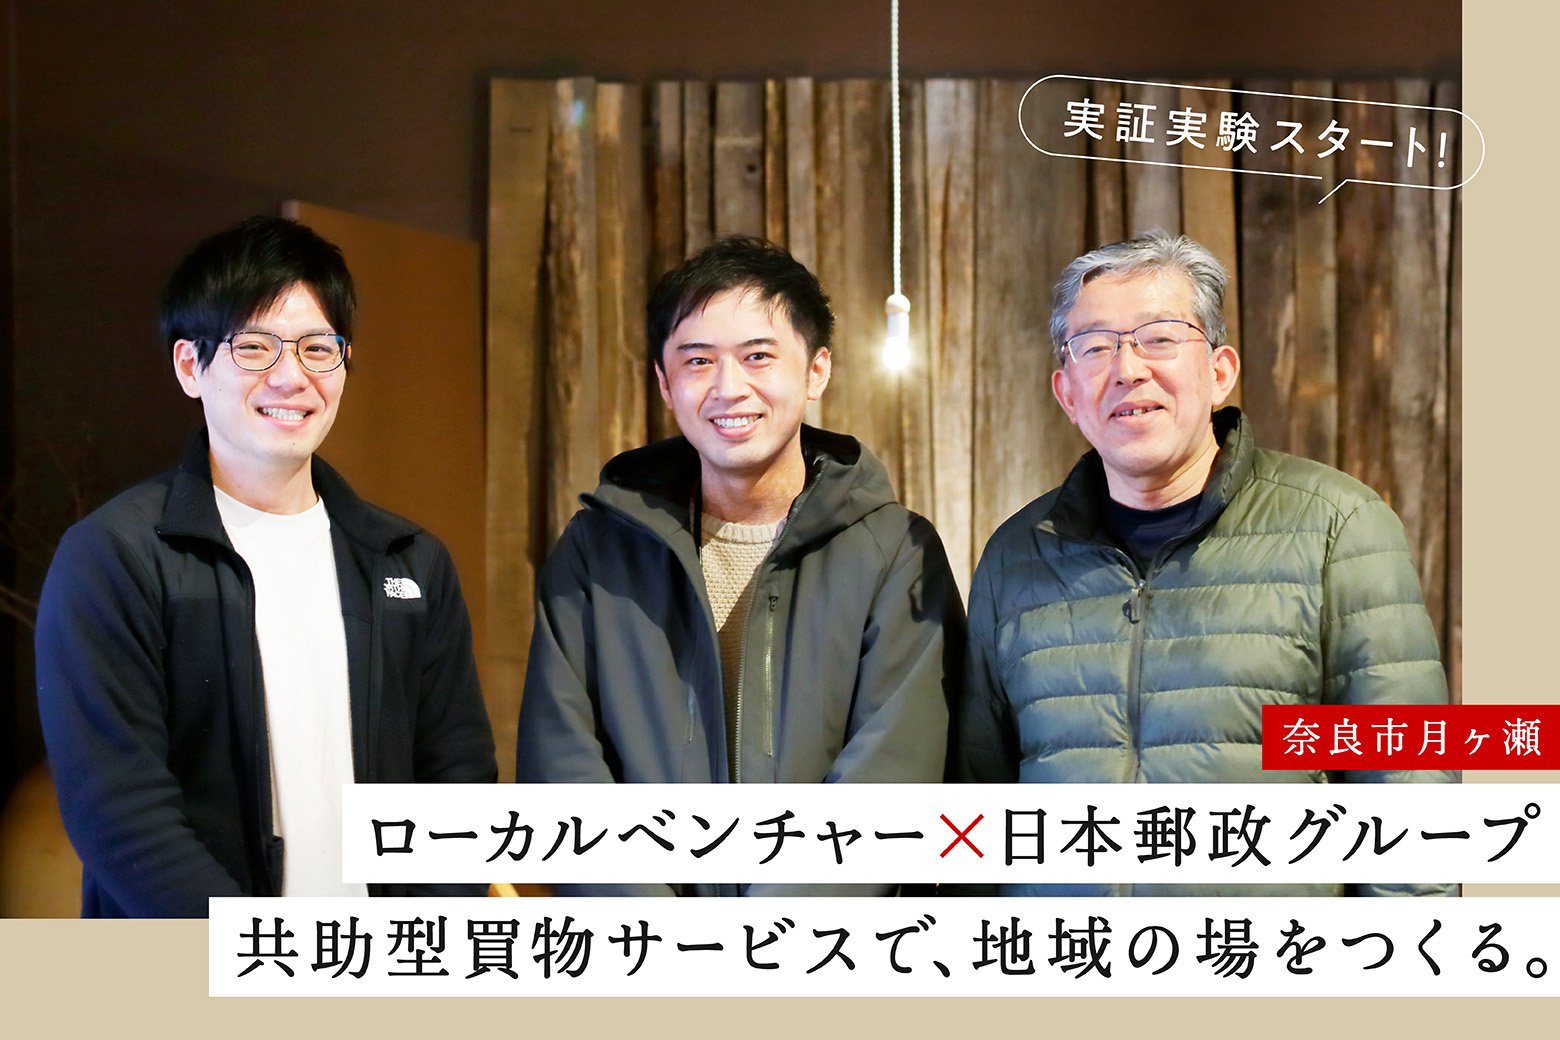 ローカル共創のススメVol.3 奈良市月ヶ瀬で買物を通じた新しい地域拠点づくりがスタート！